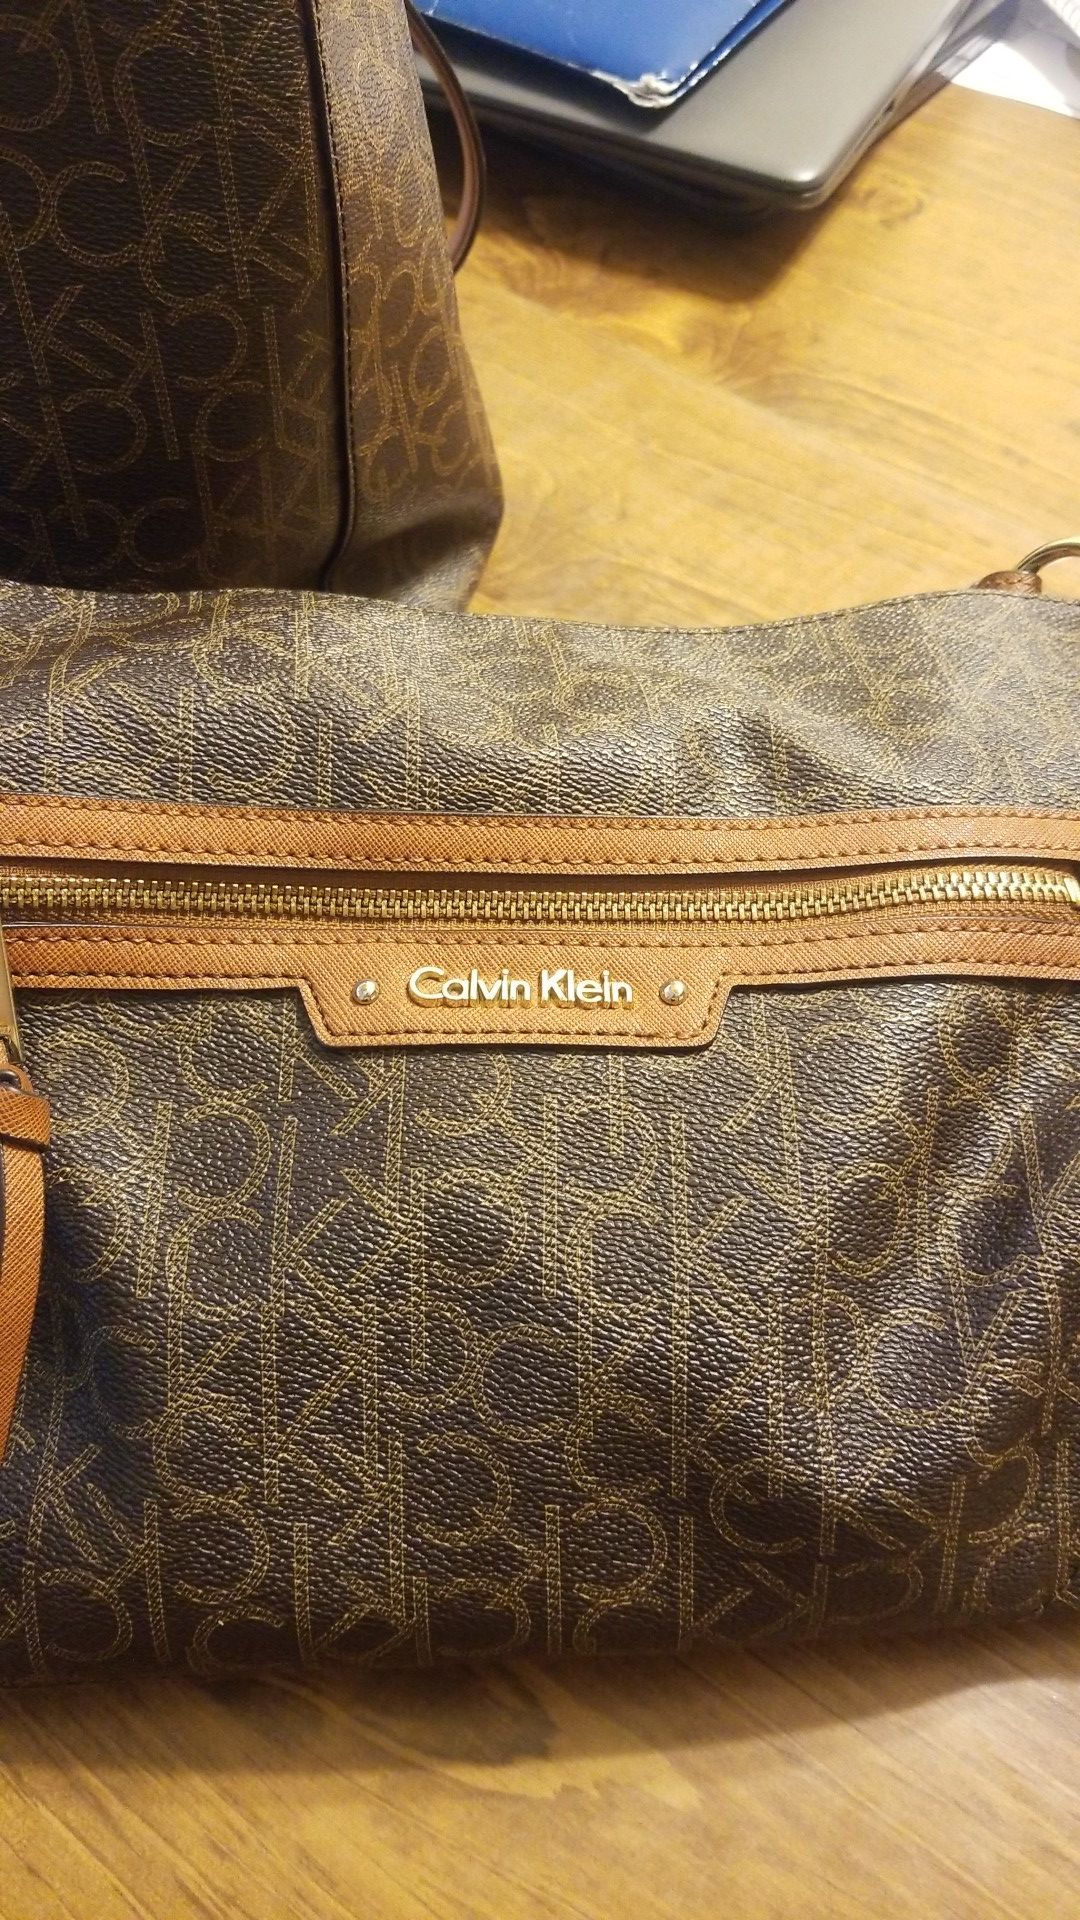 Calvin Klein small handbag